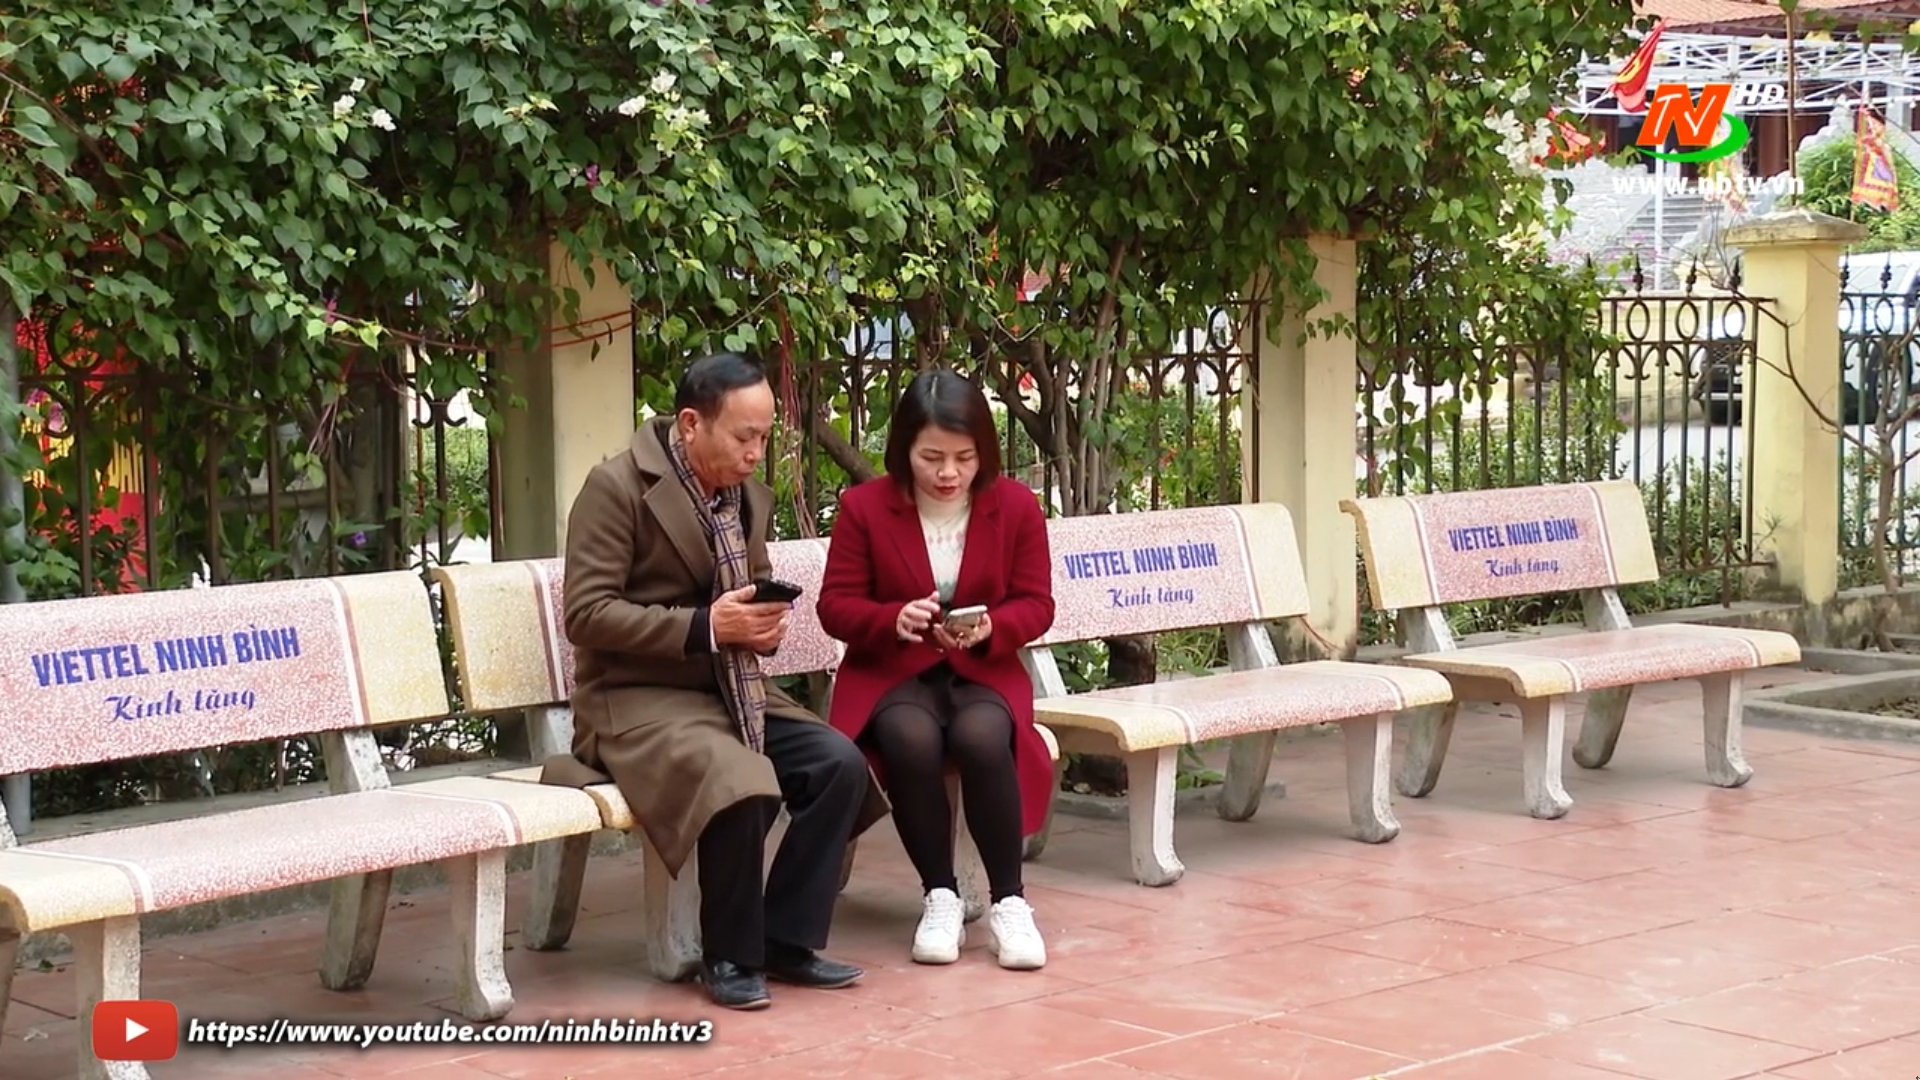 Chuyển đổi số cấp xã ở Ninh Bình – Nhiều kinh nghiệm hay